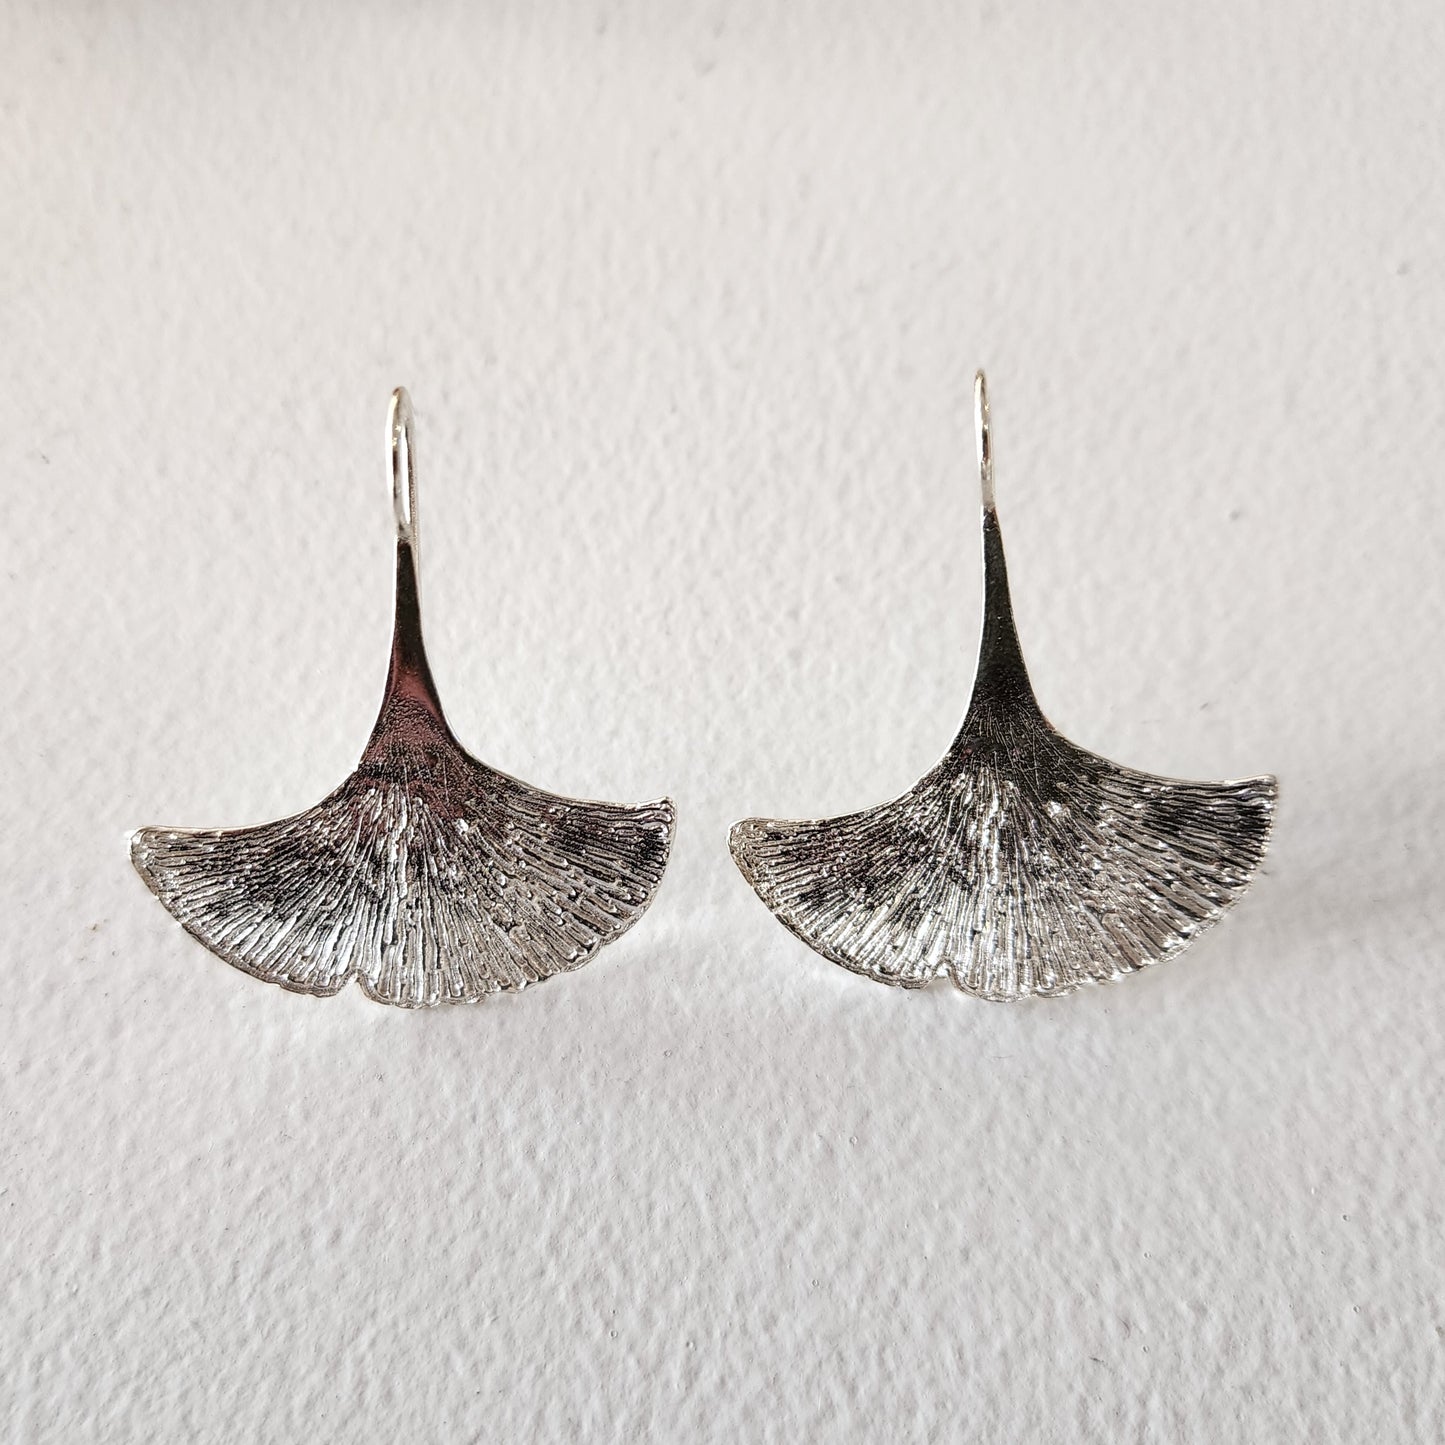 Ginkgo Flower earrings